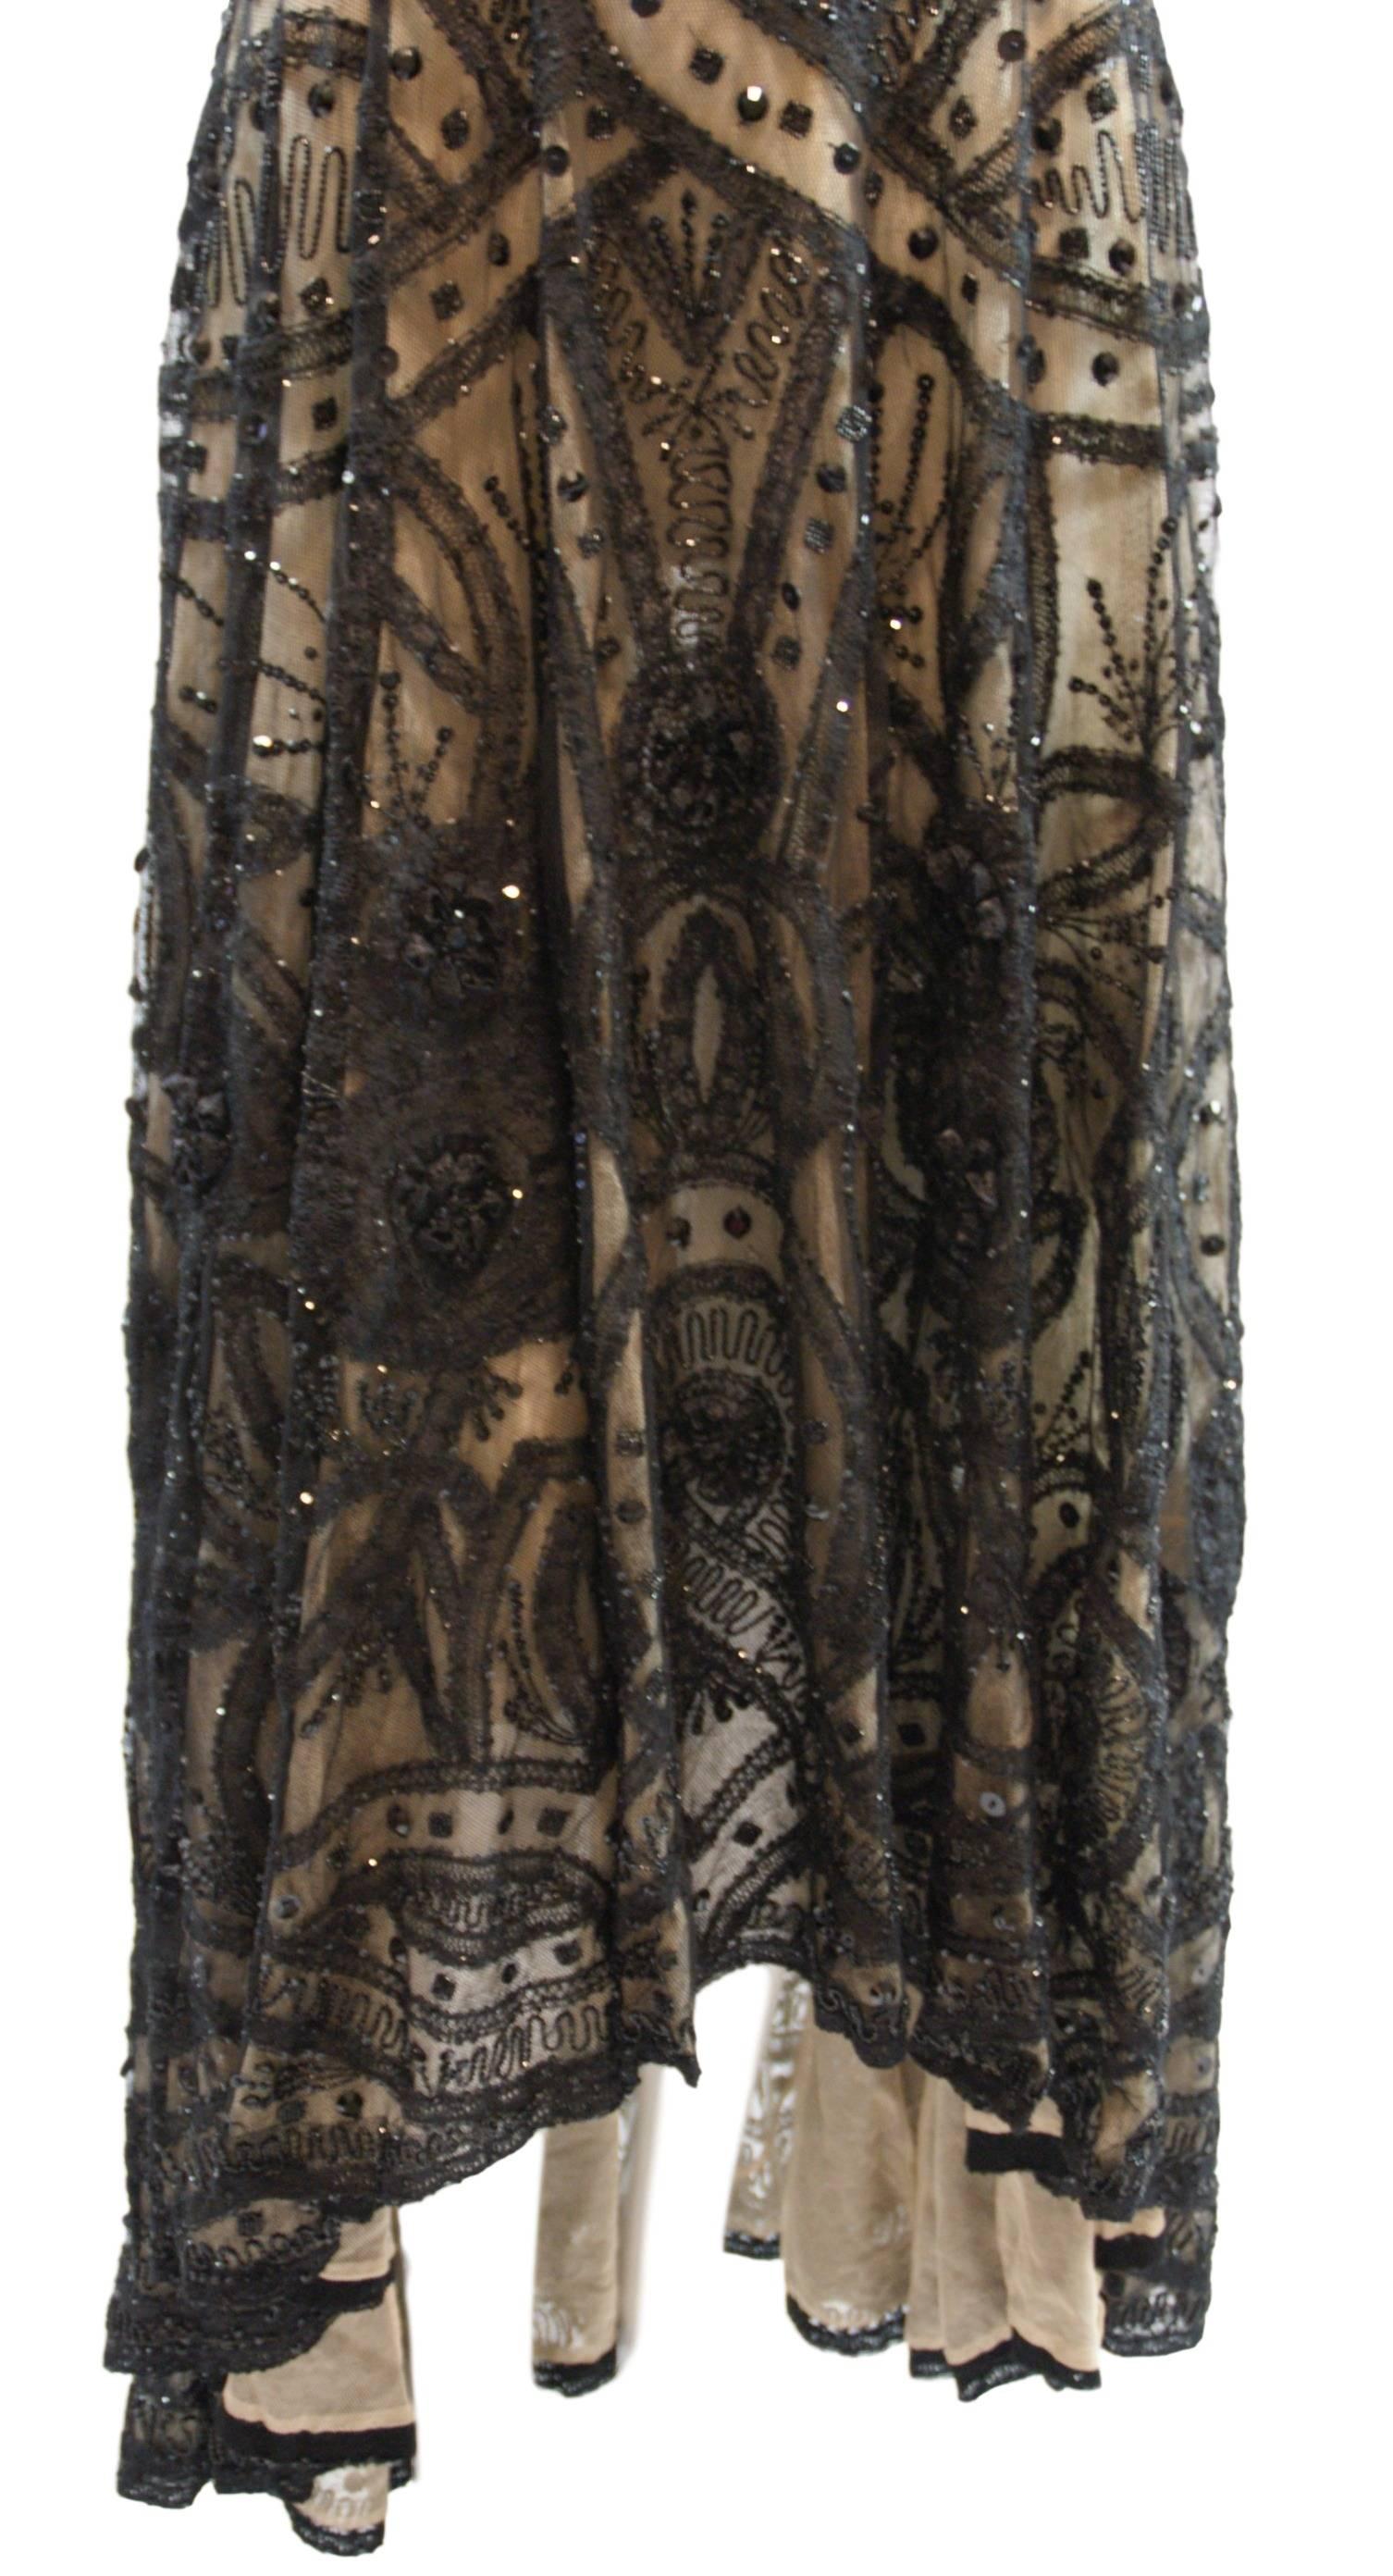 S/S 2007 Alexander McQueen Sarabande Museum Beaded Tulle Gown Dress 38 ...